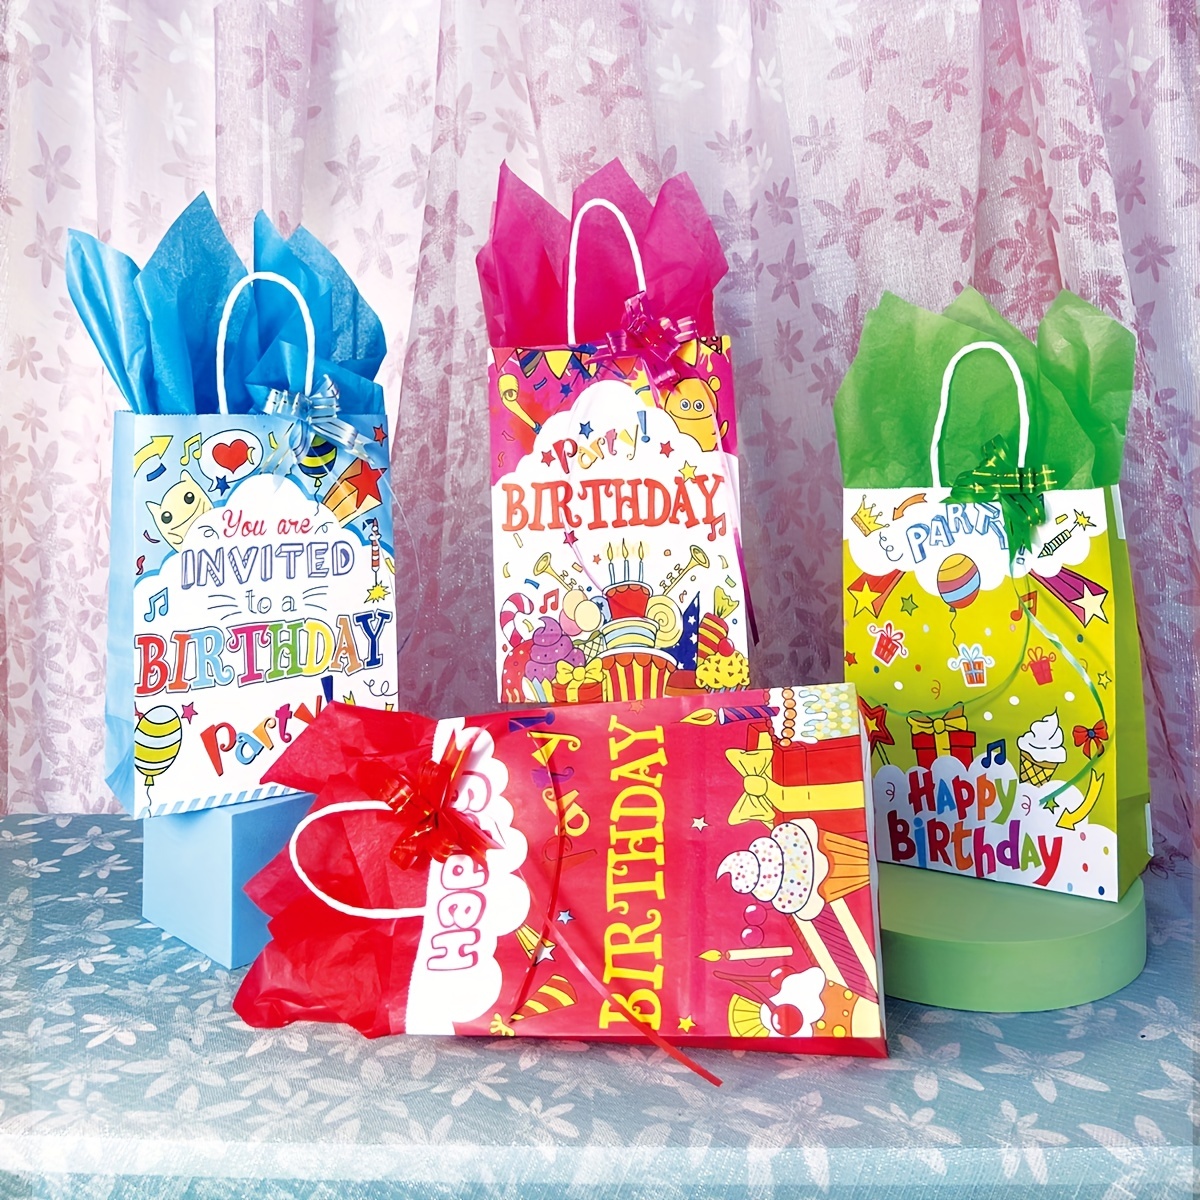 Bolsas de regalo 20 piezas portátil bolsa de papel kraft bolsa de regalo  accesorios bolsa de regalo con asa, para envolver regalos, regalos, fiestas